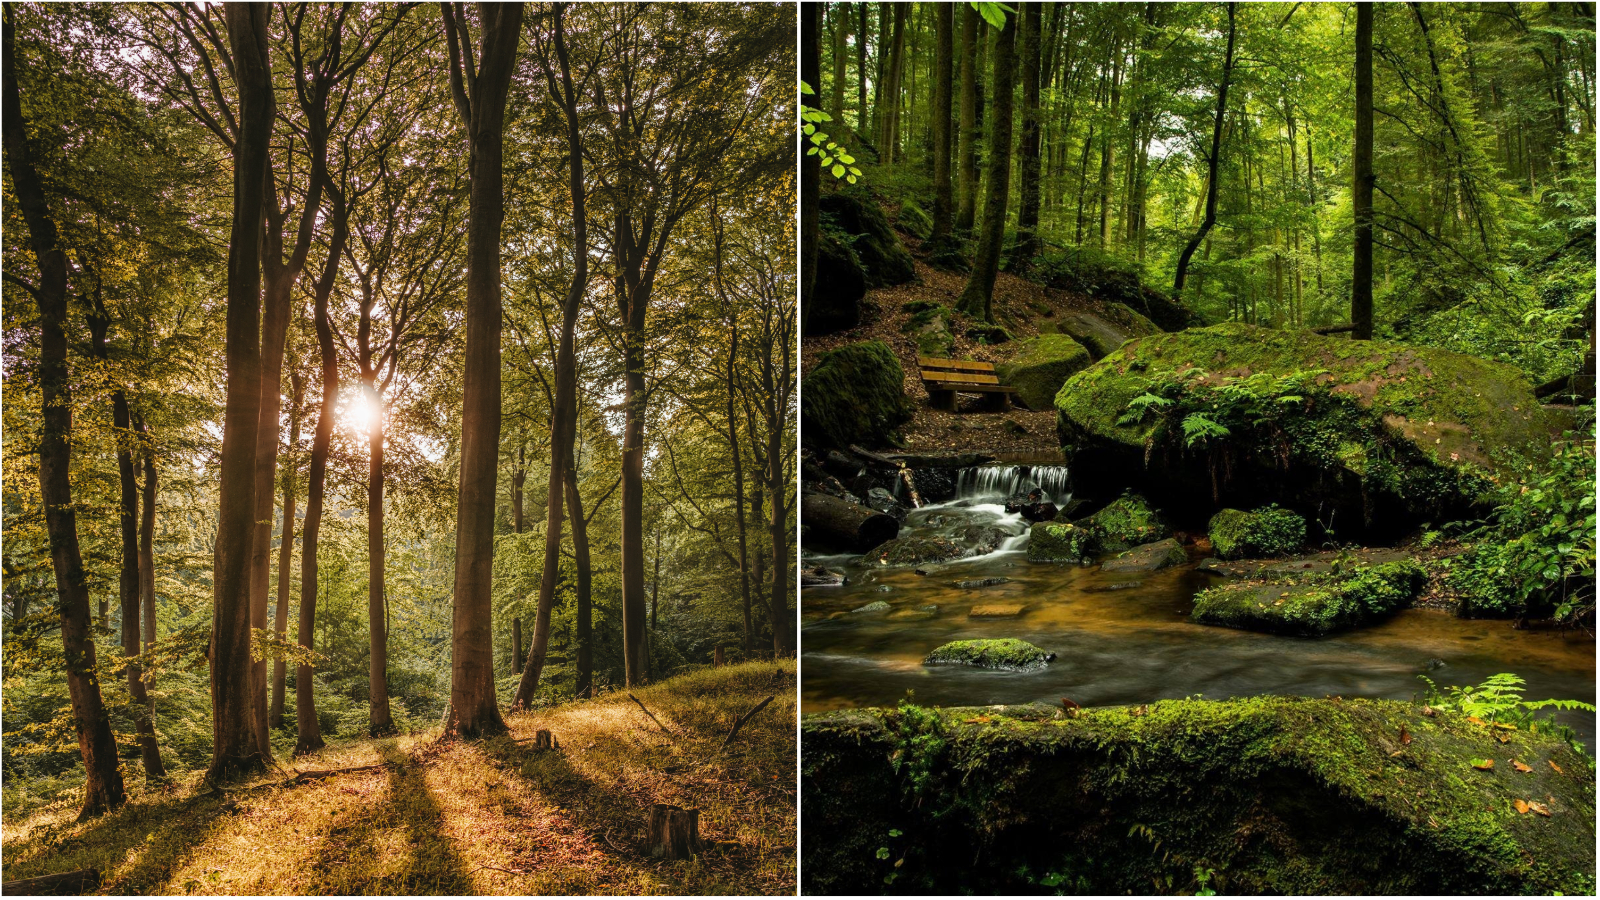 Vikend izlet: Prošetali smo kroz jedanaest predivnih šuma koje su odličan lijek za relaksaciju